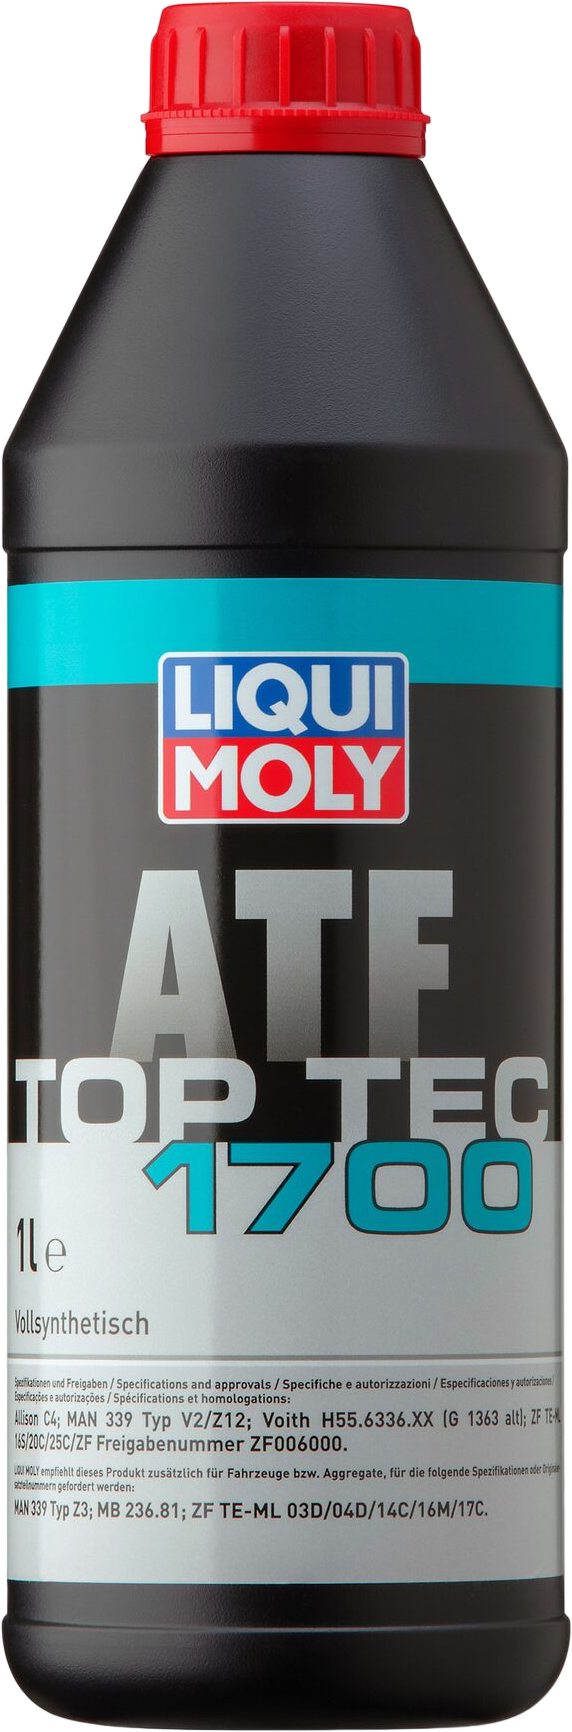 Liqui Moly Top Tec ATF 1700, 6 x 1 lt detail 2